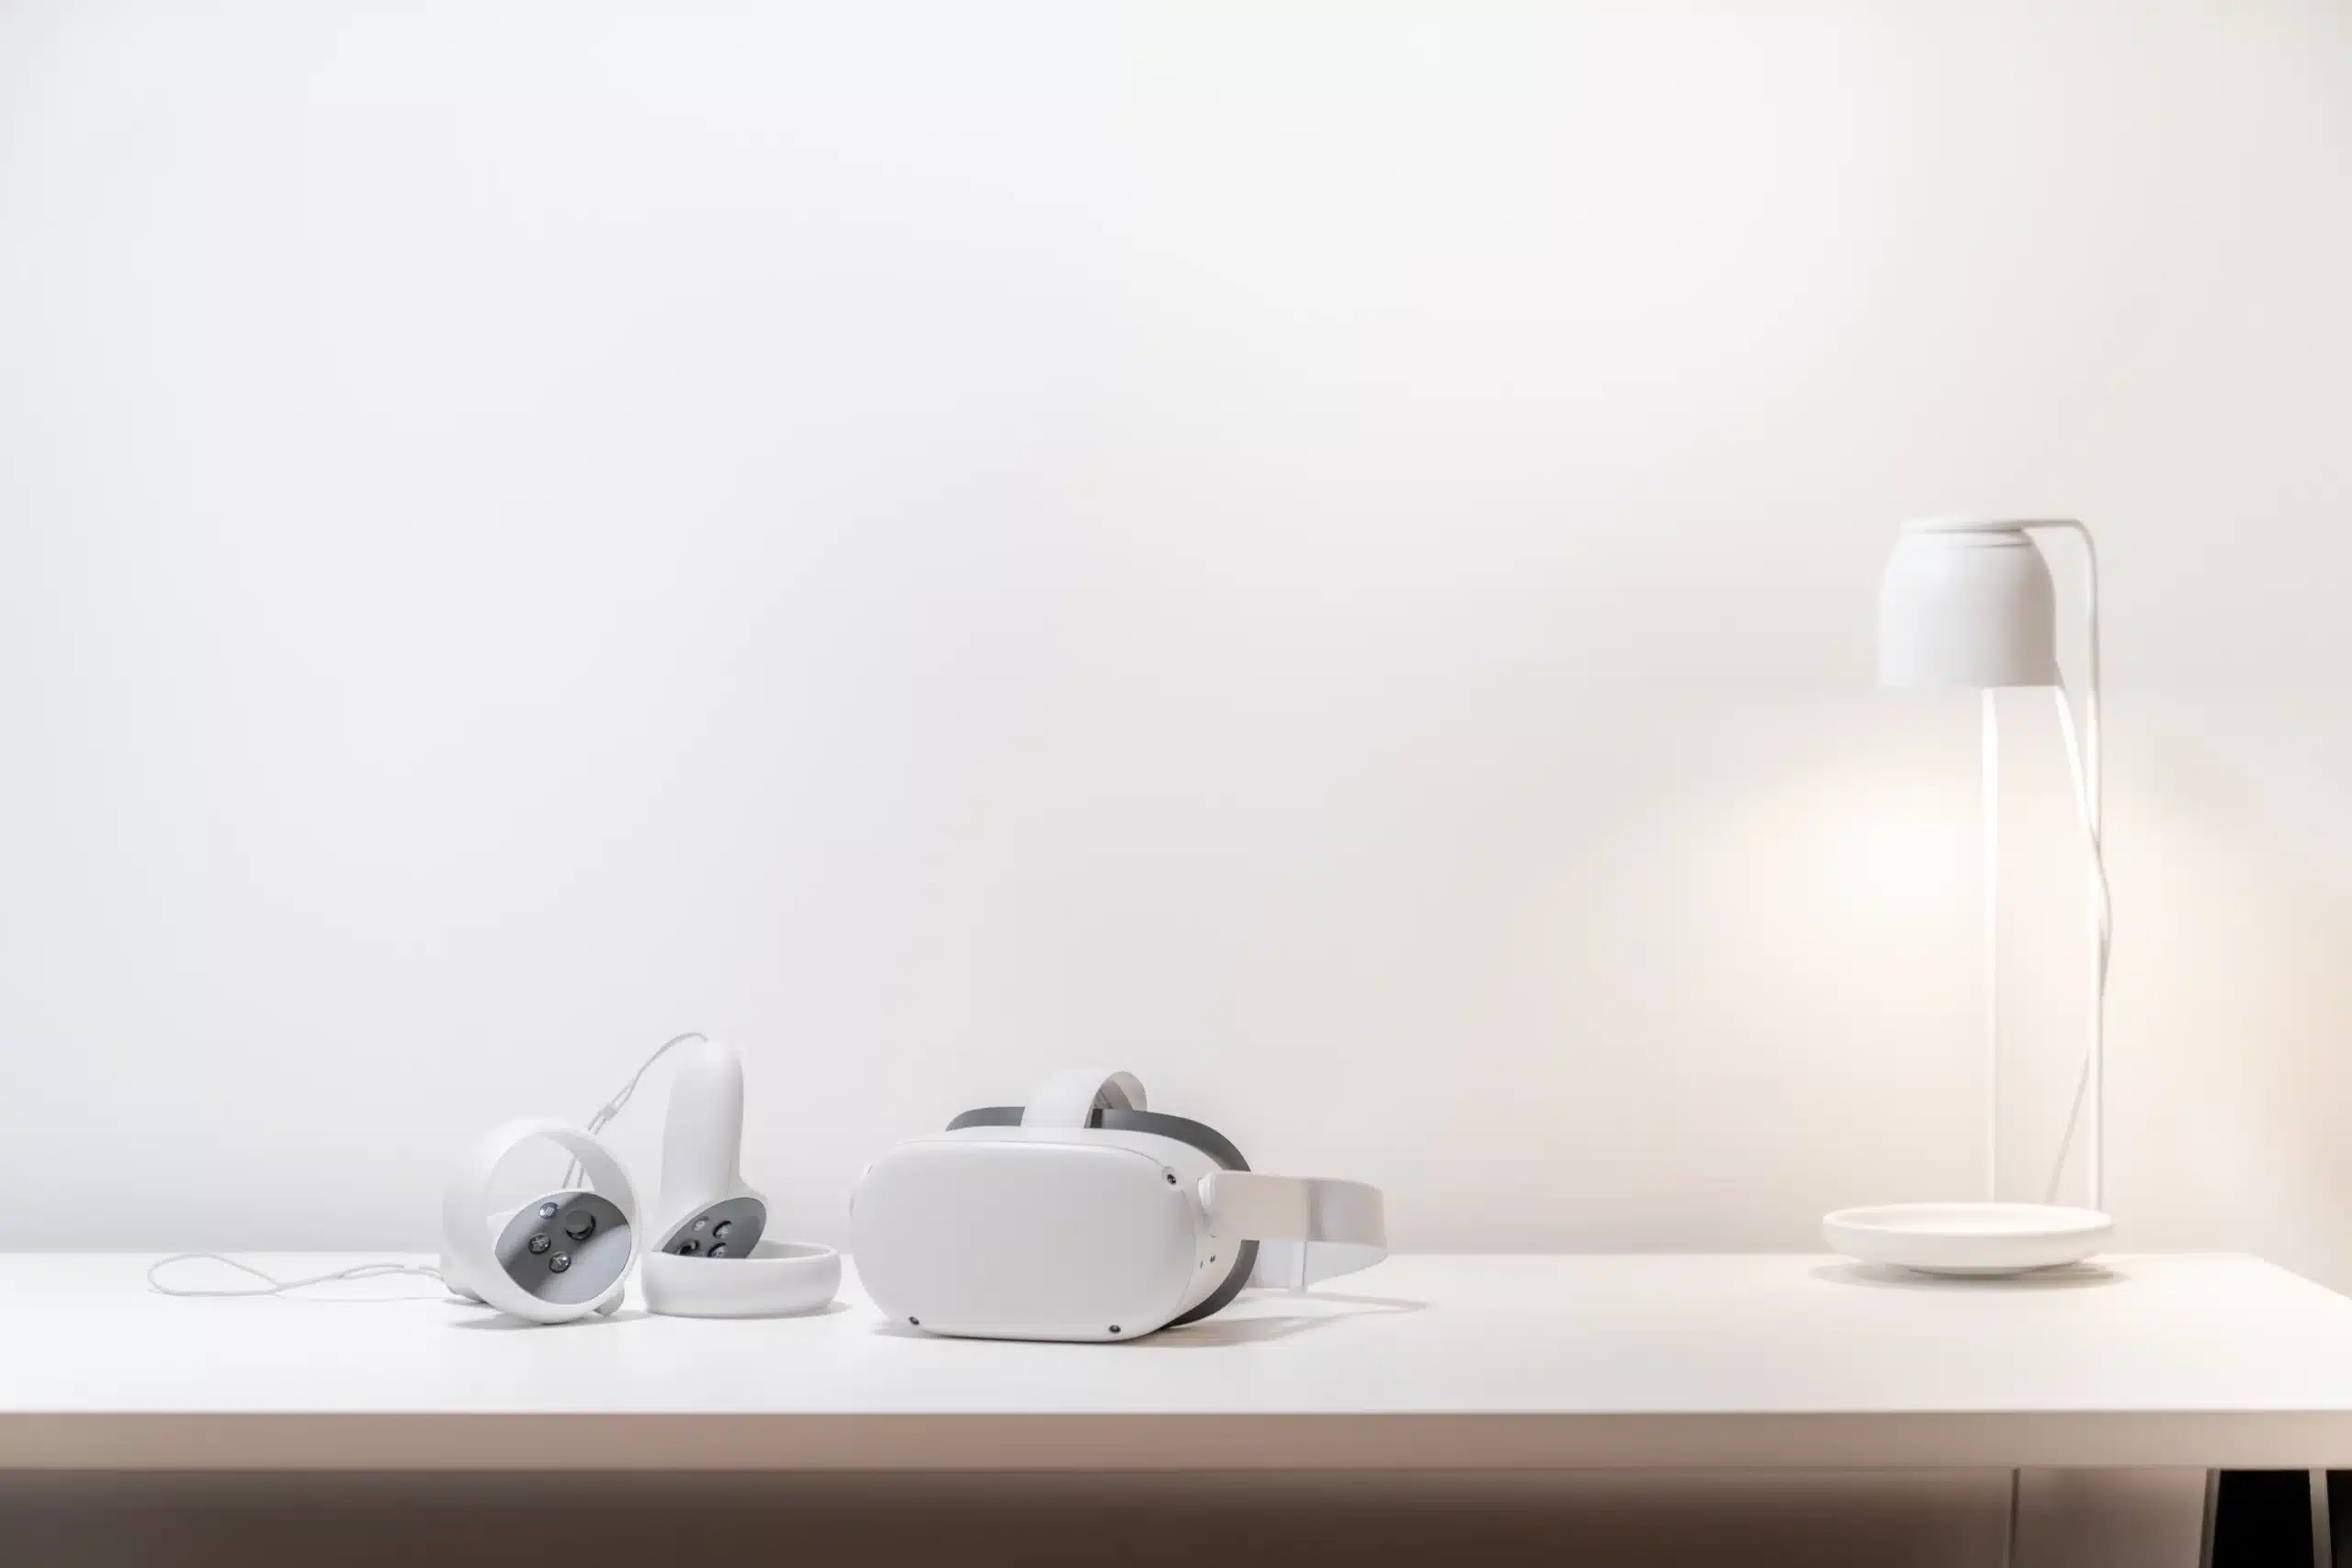 Casque d'AR VR posé sur un bureau près d'une lampe